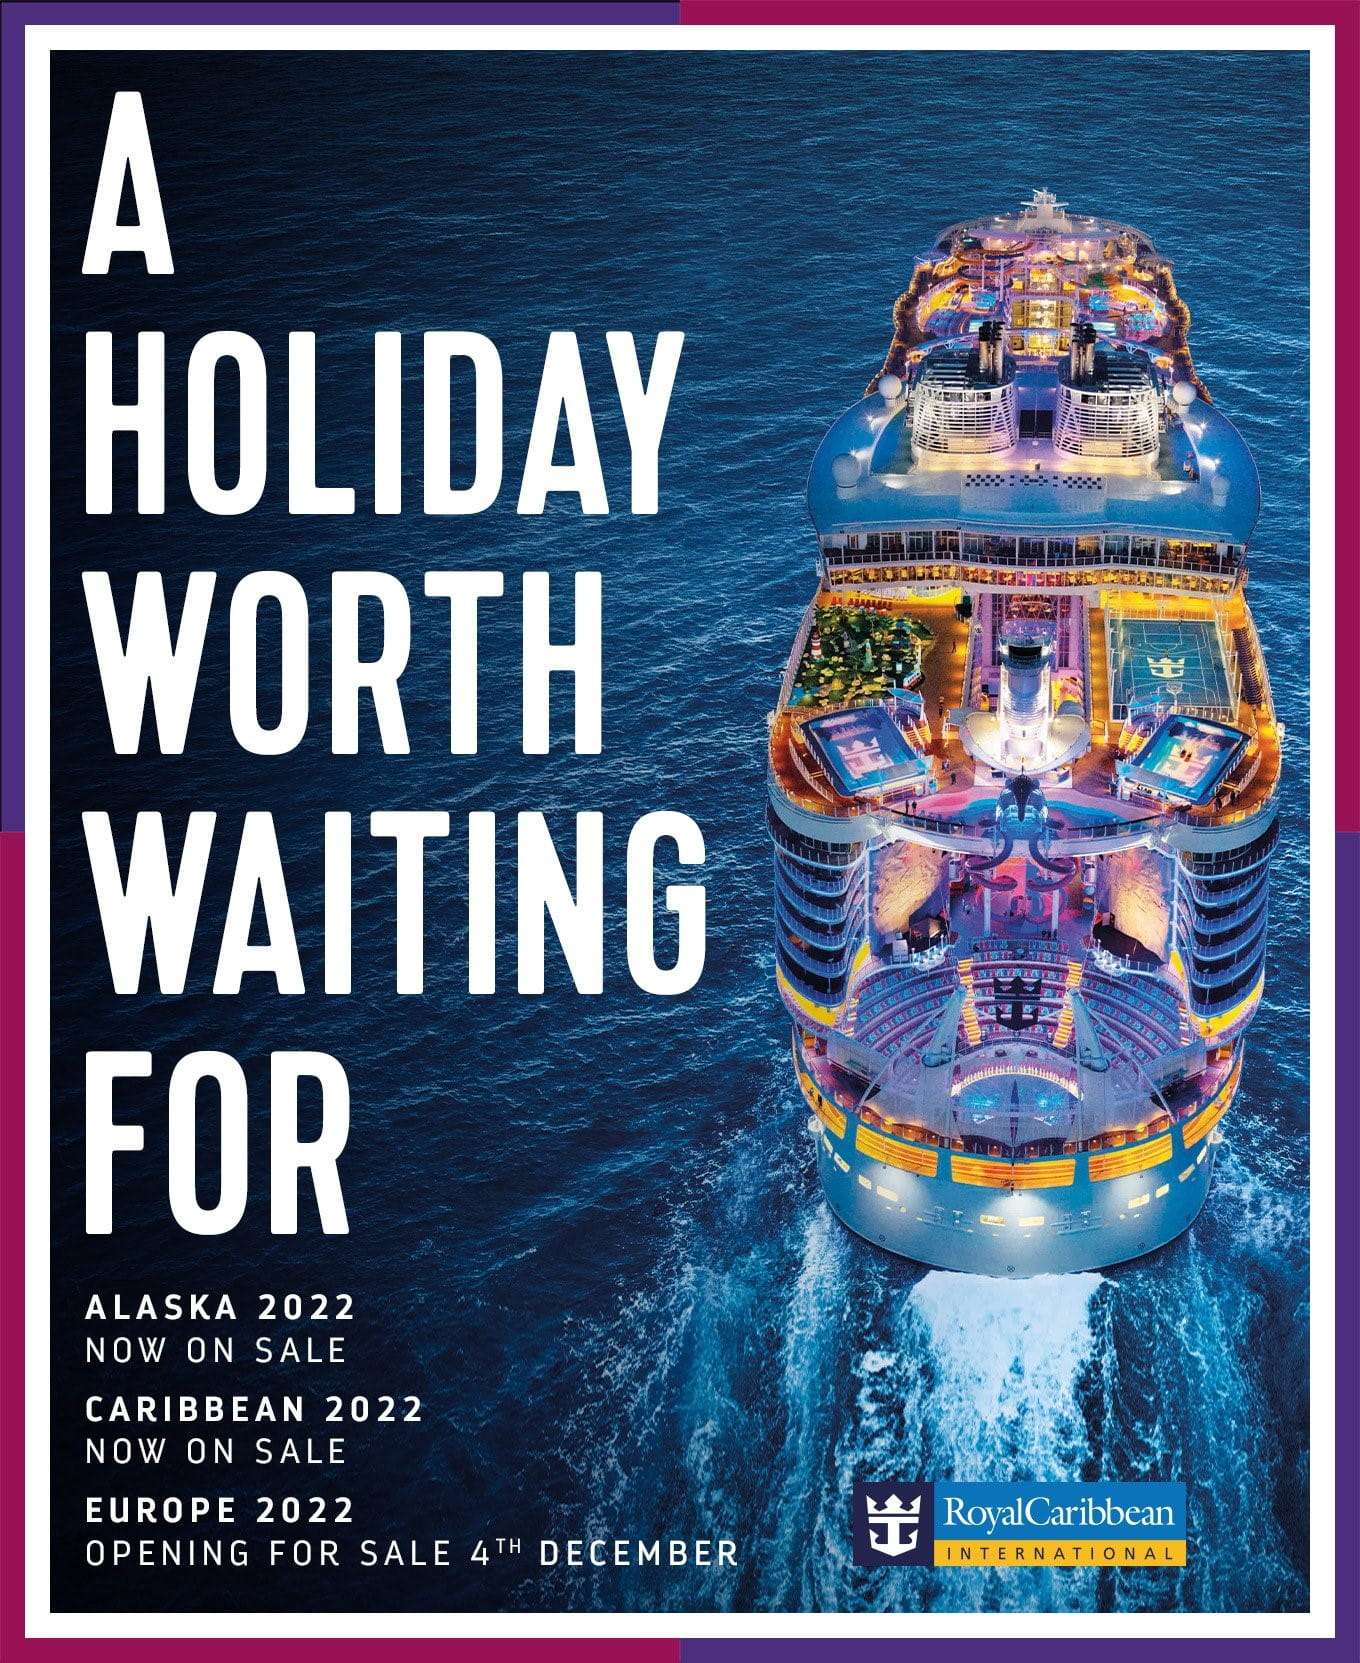 Royal Caribbean Cruise Holiday Deals 2022